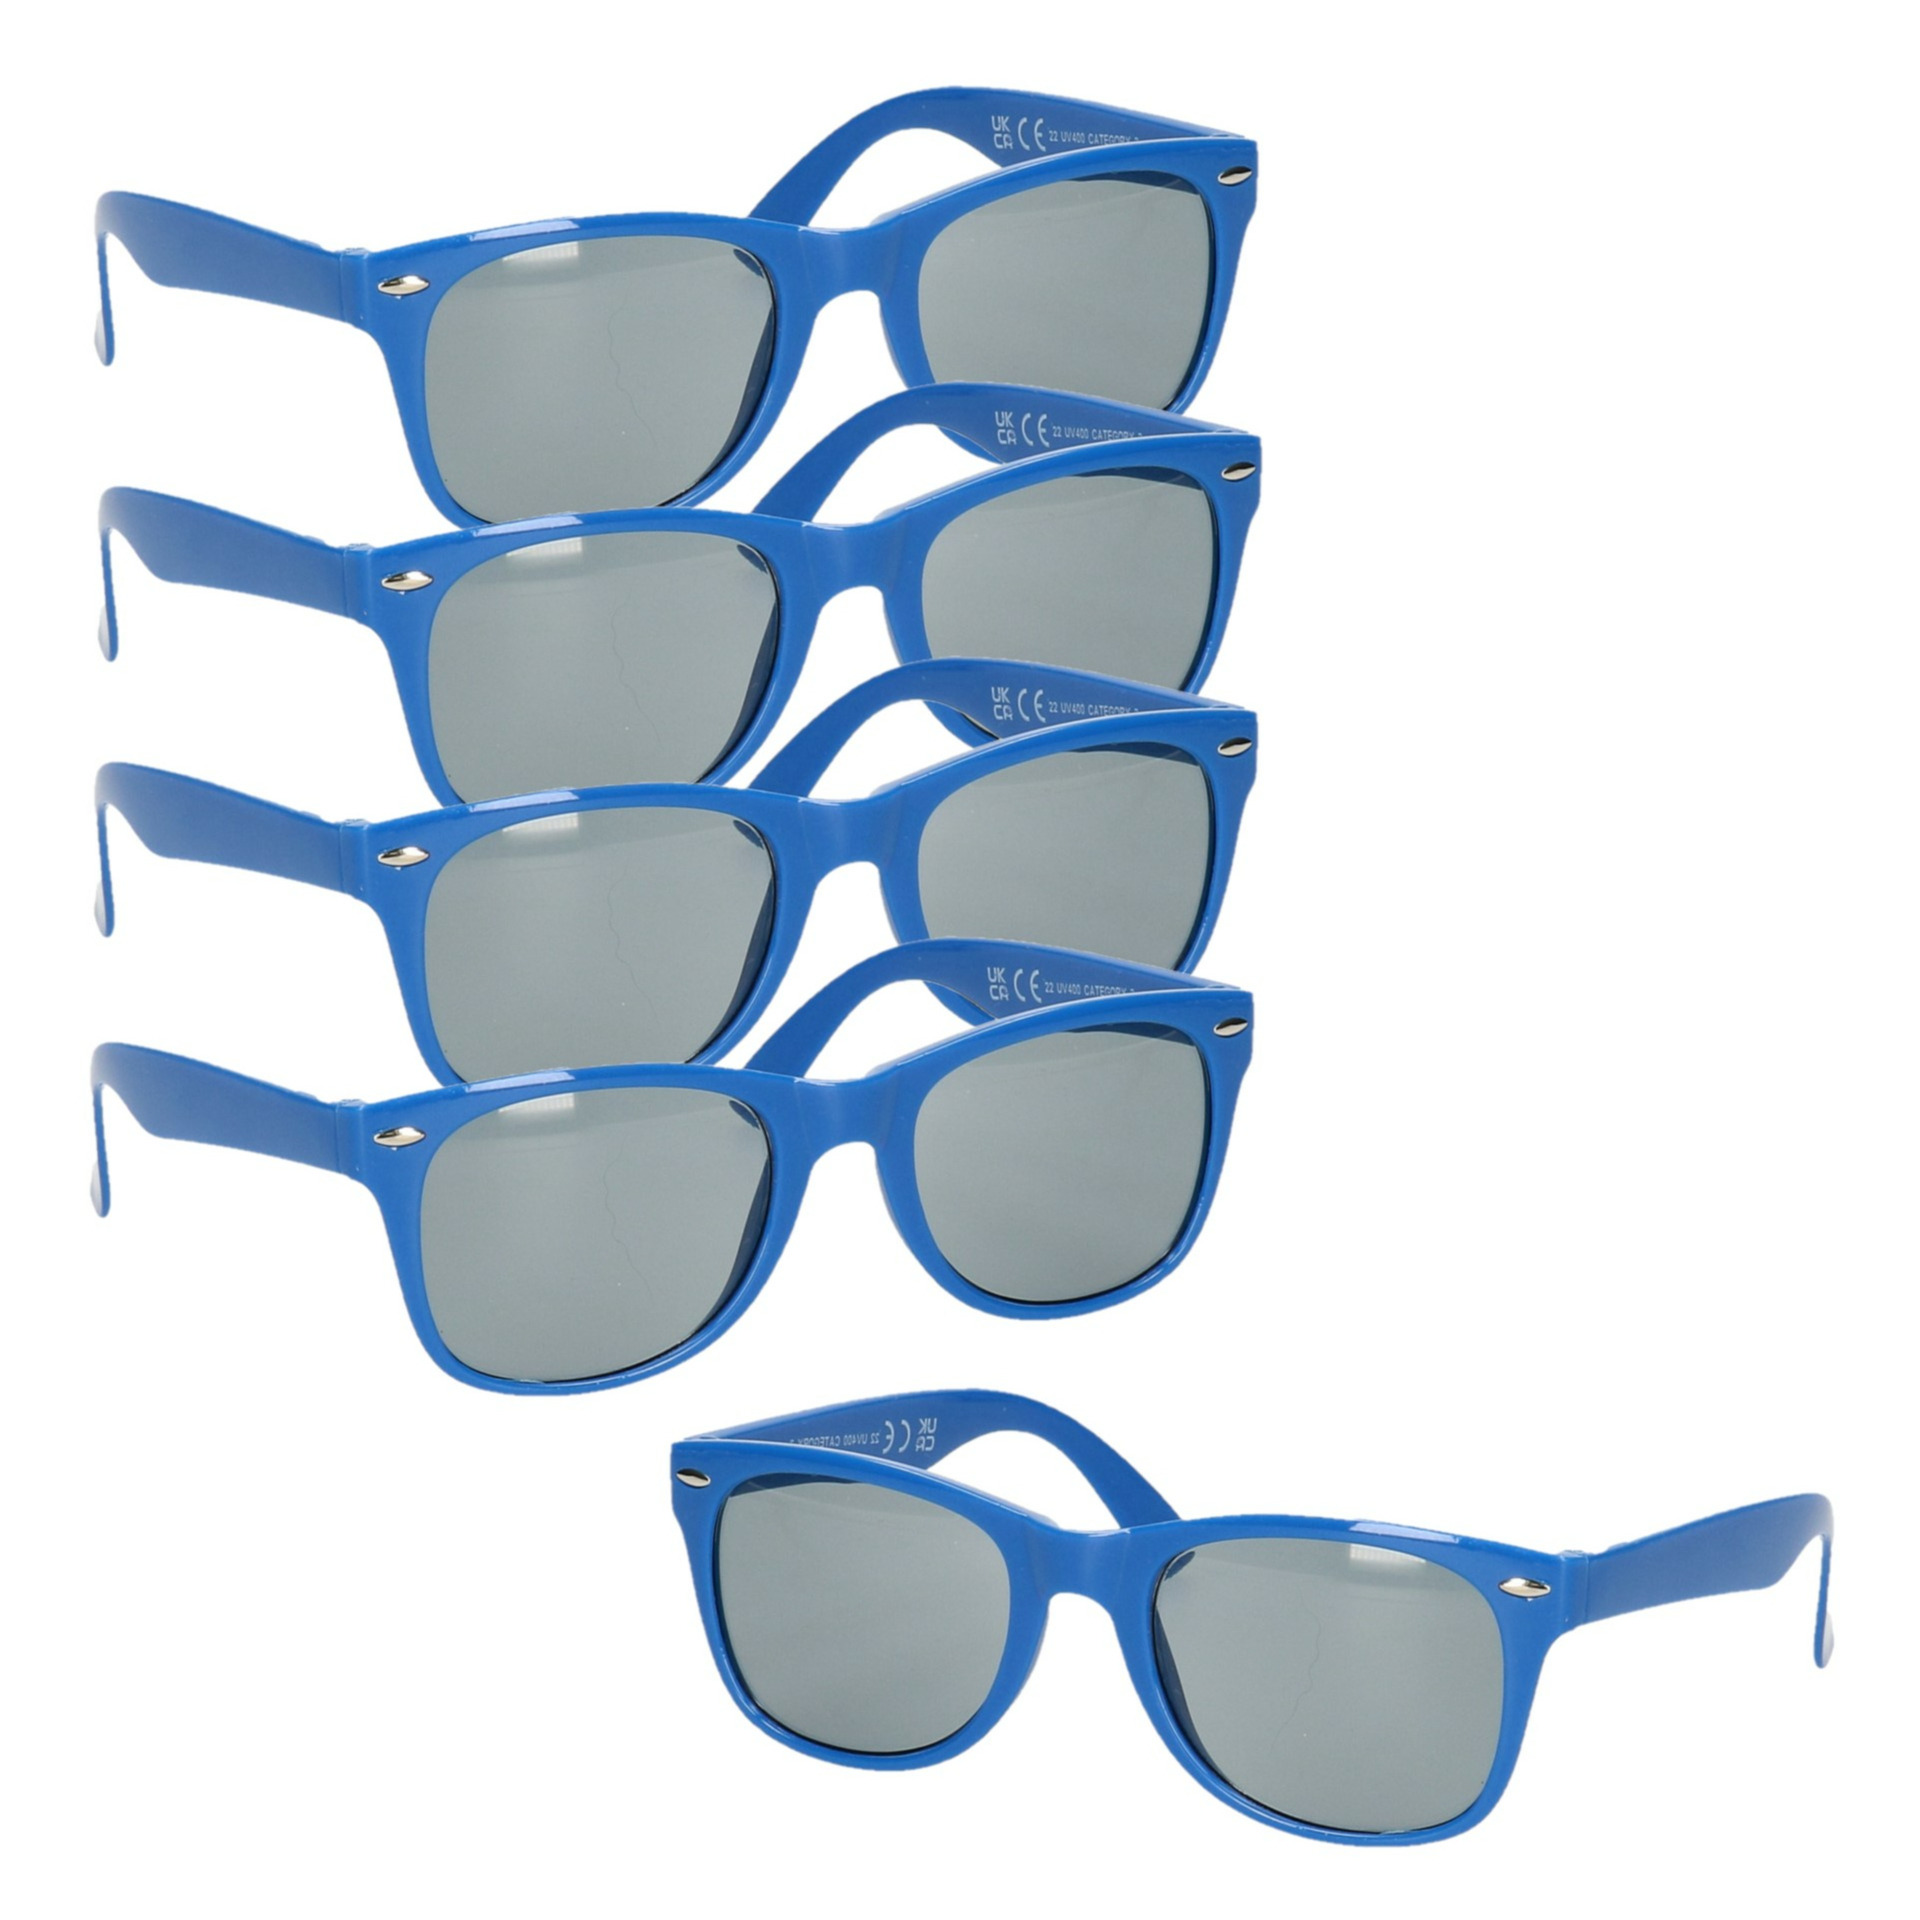 10x stuks hippe feest zonnebril met blauw montuur